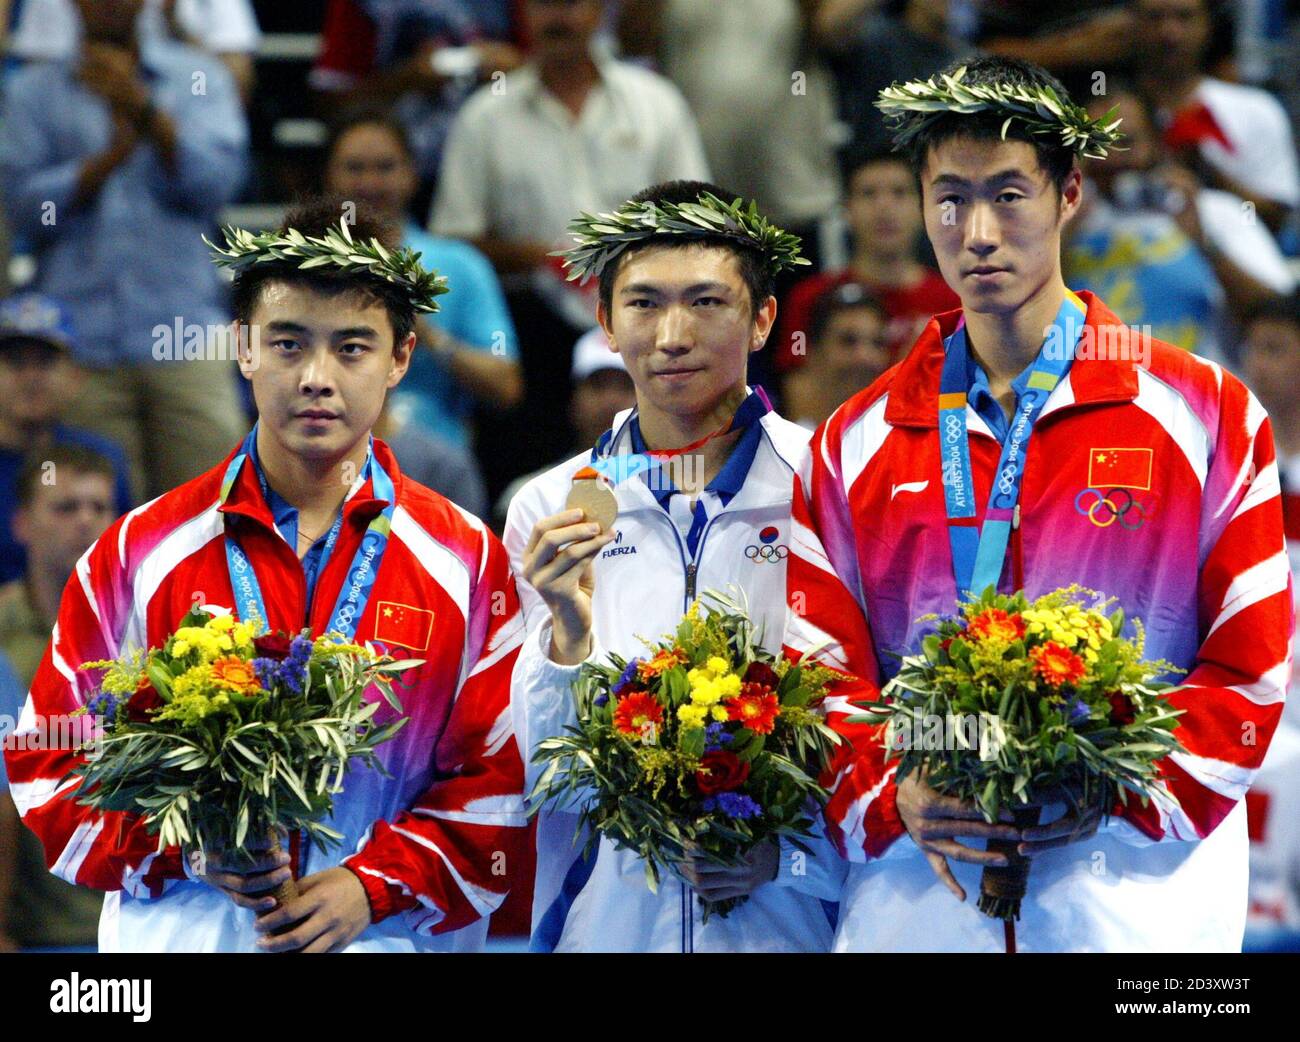 Ryu Seung min (C), medaglia d'oro della Corea del Sud, Hao Wang (L) e Liqin Wang (R), medaglia d'argento della Cina, mostrano le loro medaglie dal podio dopo la cerimonia della medaglia per l'evento maschile di ping-pong single ai Giochi Olimpici estivi di Atene 2004, 23 agosto 2004. [Ryu ha battuto Wang per vincere l'oro nella finale maschile e ha sconvolto il dominio cinese del ping-pong olimpico.] Foto Stock